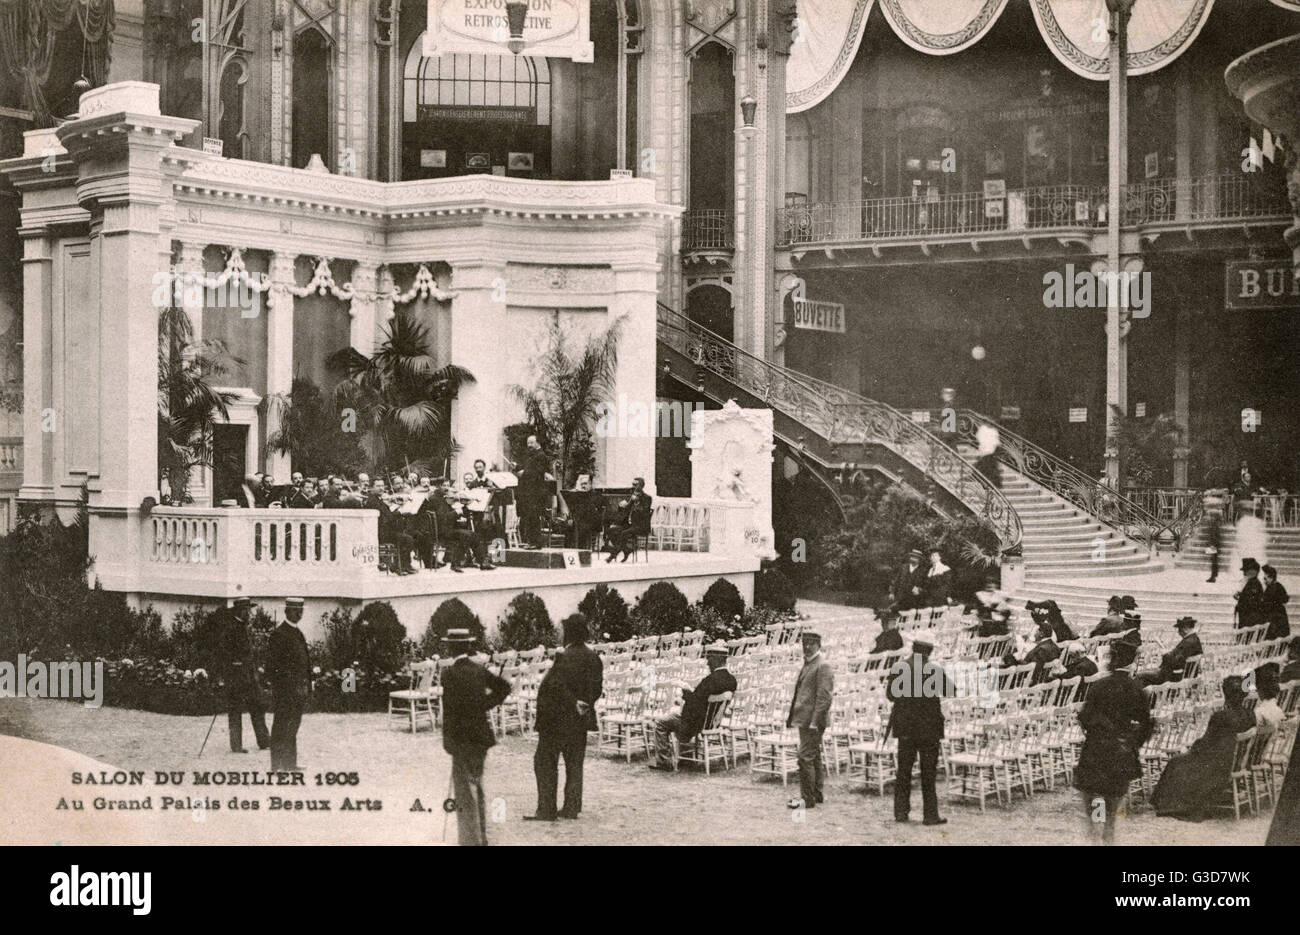 Salon du Mobilier - Grand Palais des Beaux Arts, Paris, France.     Date: 1905 Stock Photo